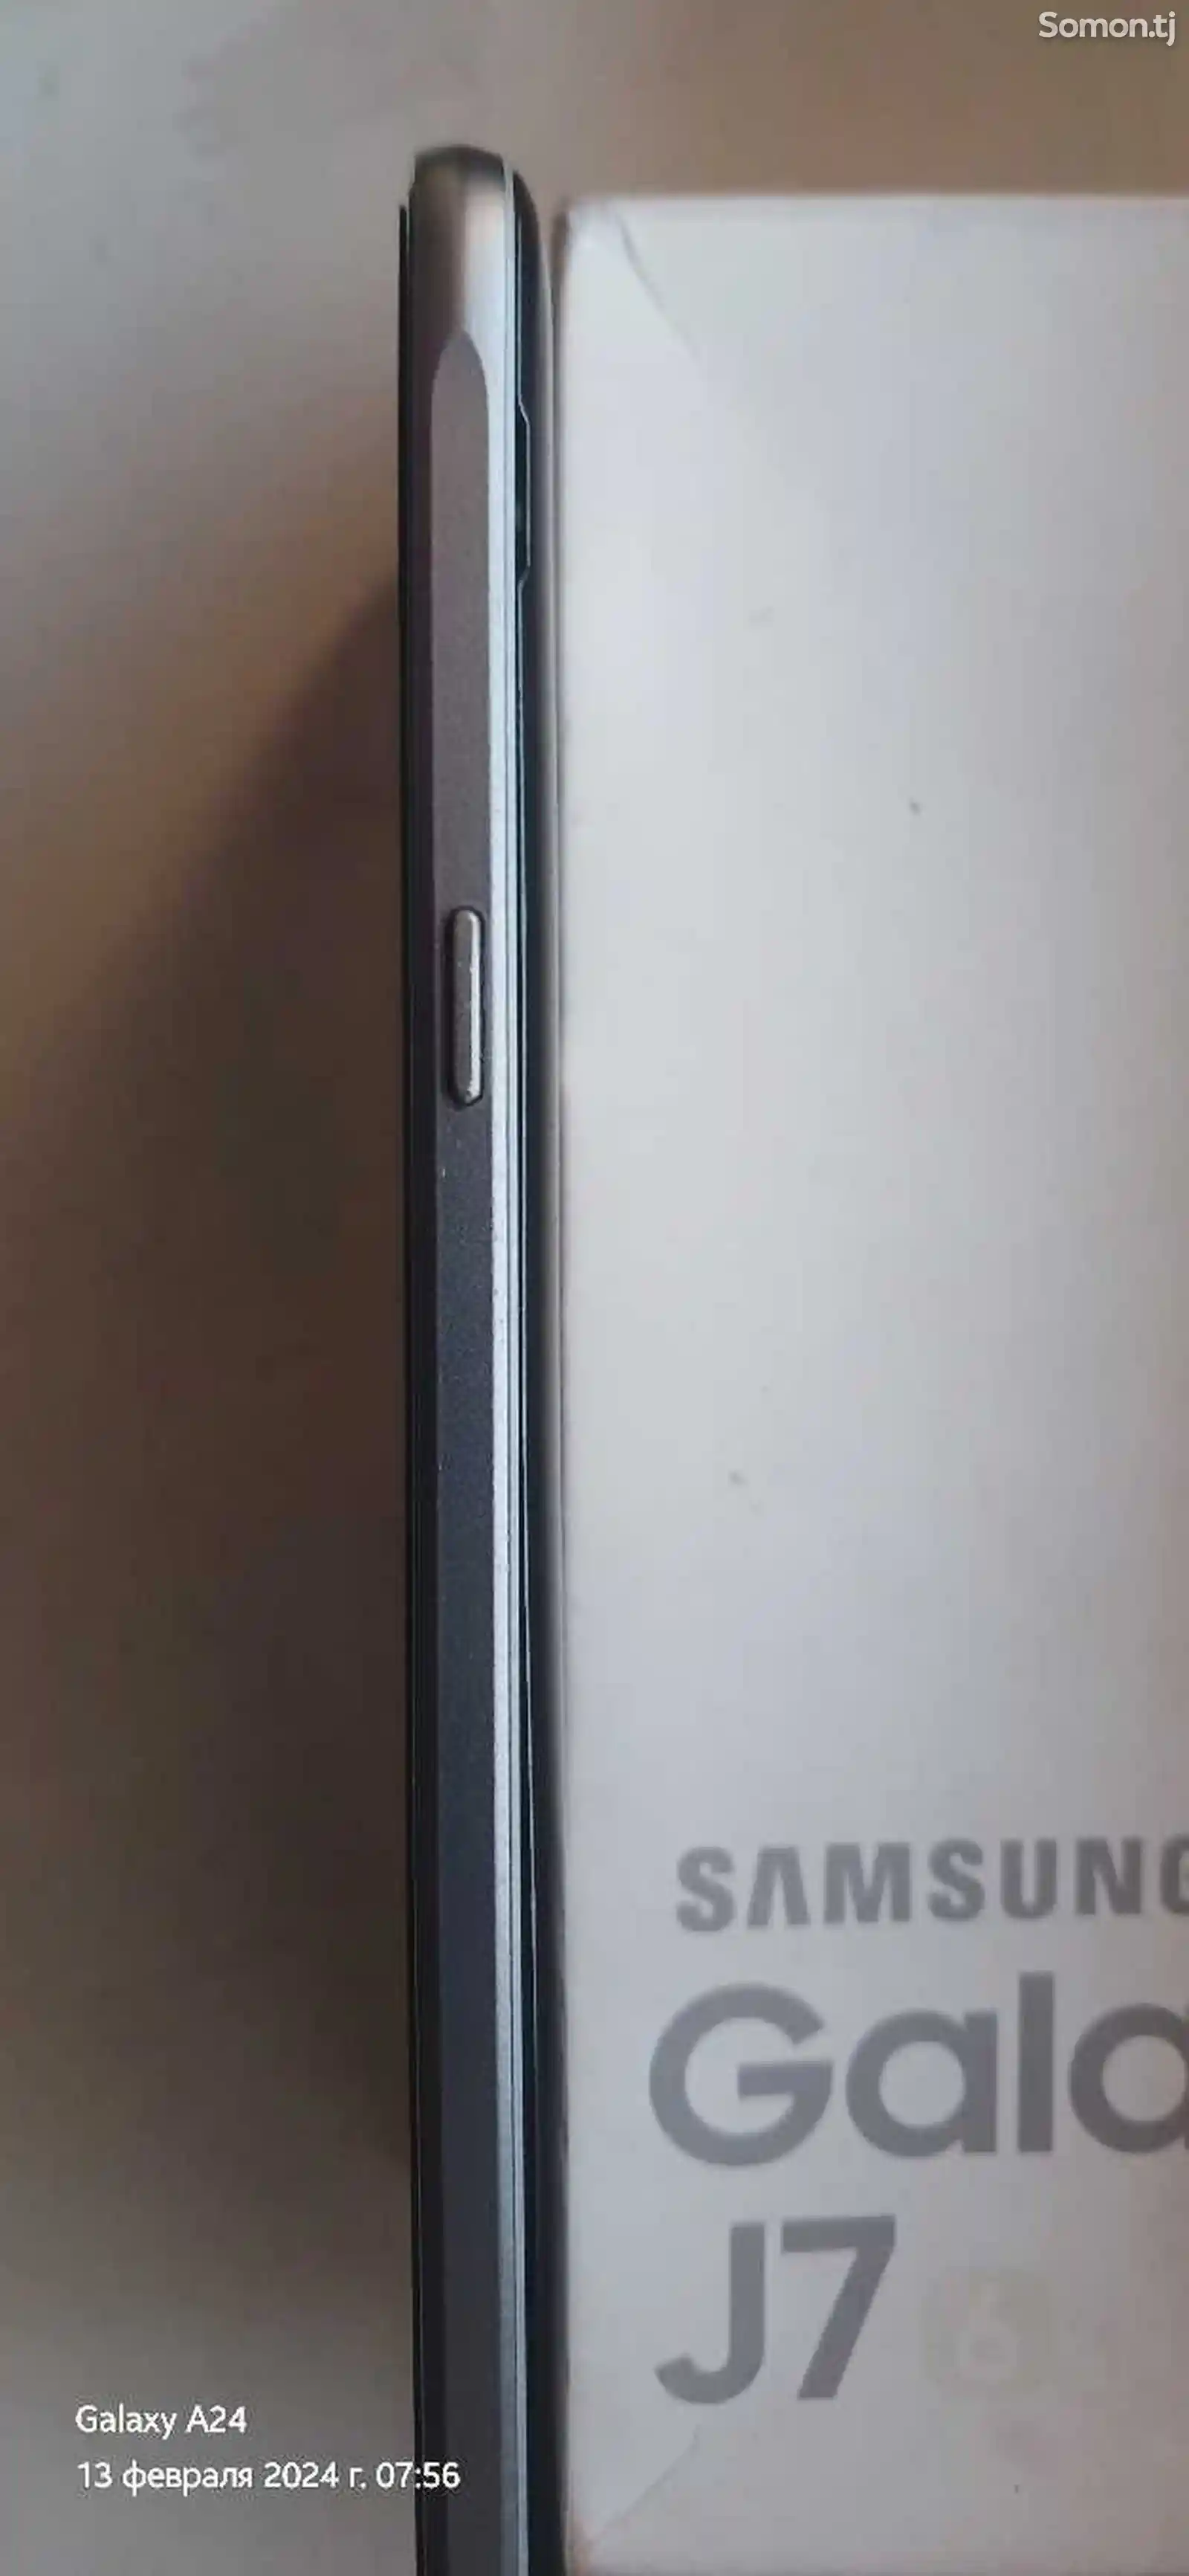 Samsung Galaxy J7-15